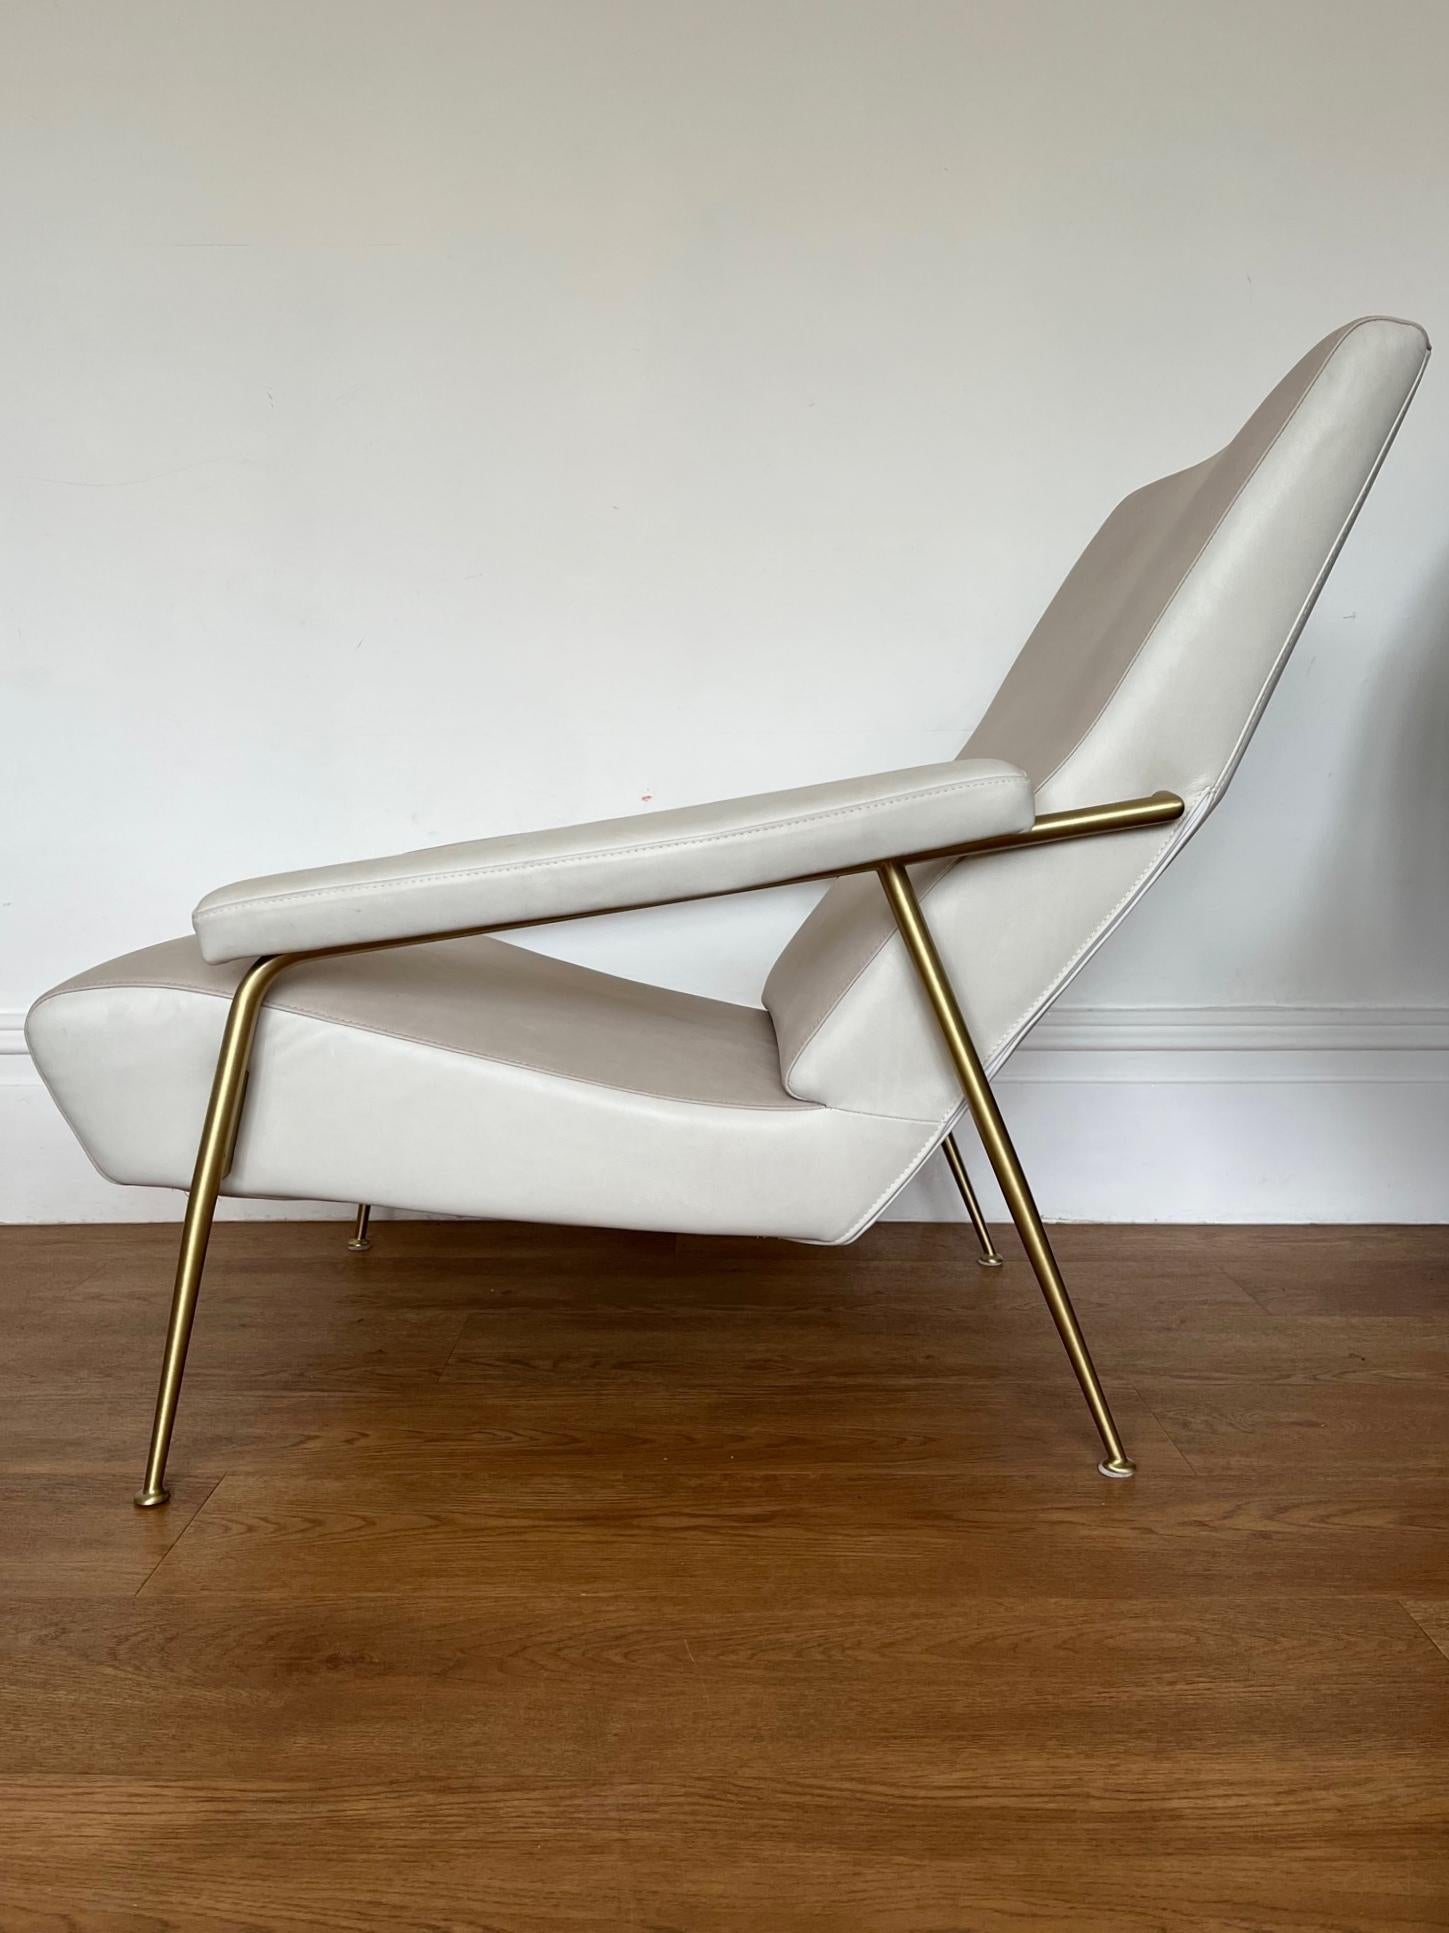 Ursprünglich 1953 vom italienischen Meisterarchitekten Gio Ponti entworfen und 2012 von Molteni&C. neu aufgelegt.

Der Stuhl besteht aus zweifarbigem Sand-/Papierleder mit Rahmen und Beinen aus satiniertem Messing.

Der Stuhl weist einige kleinere